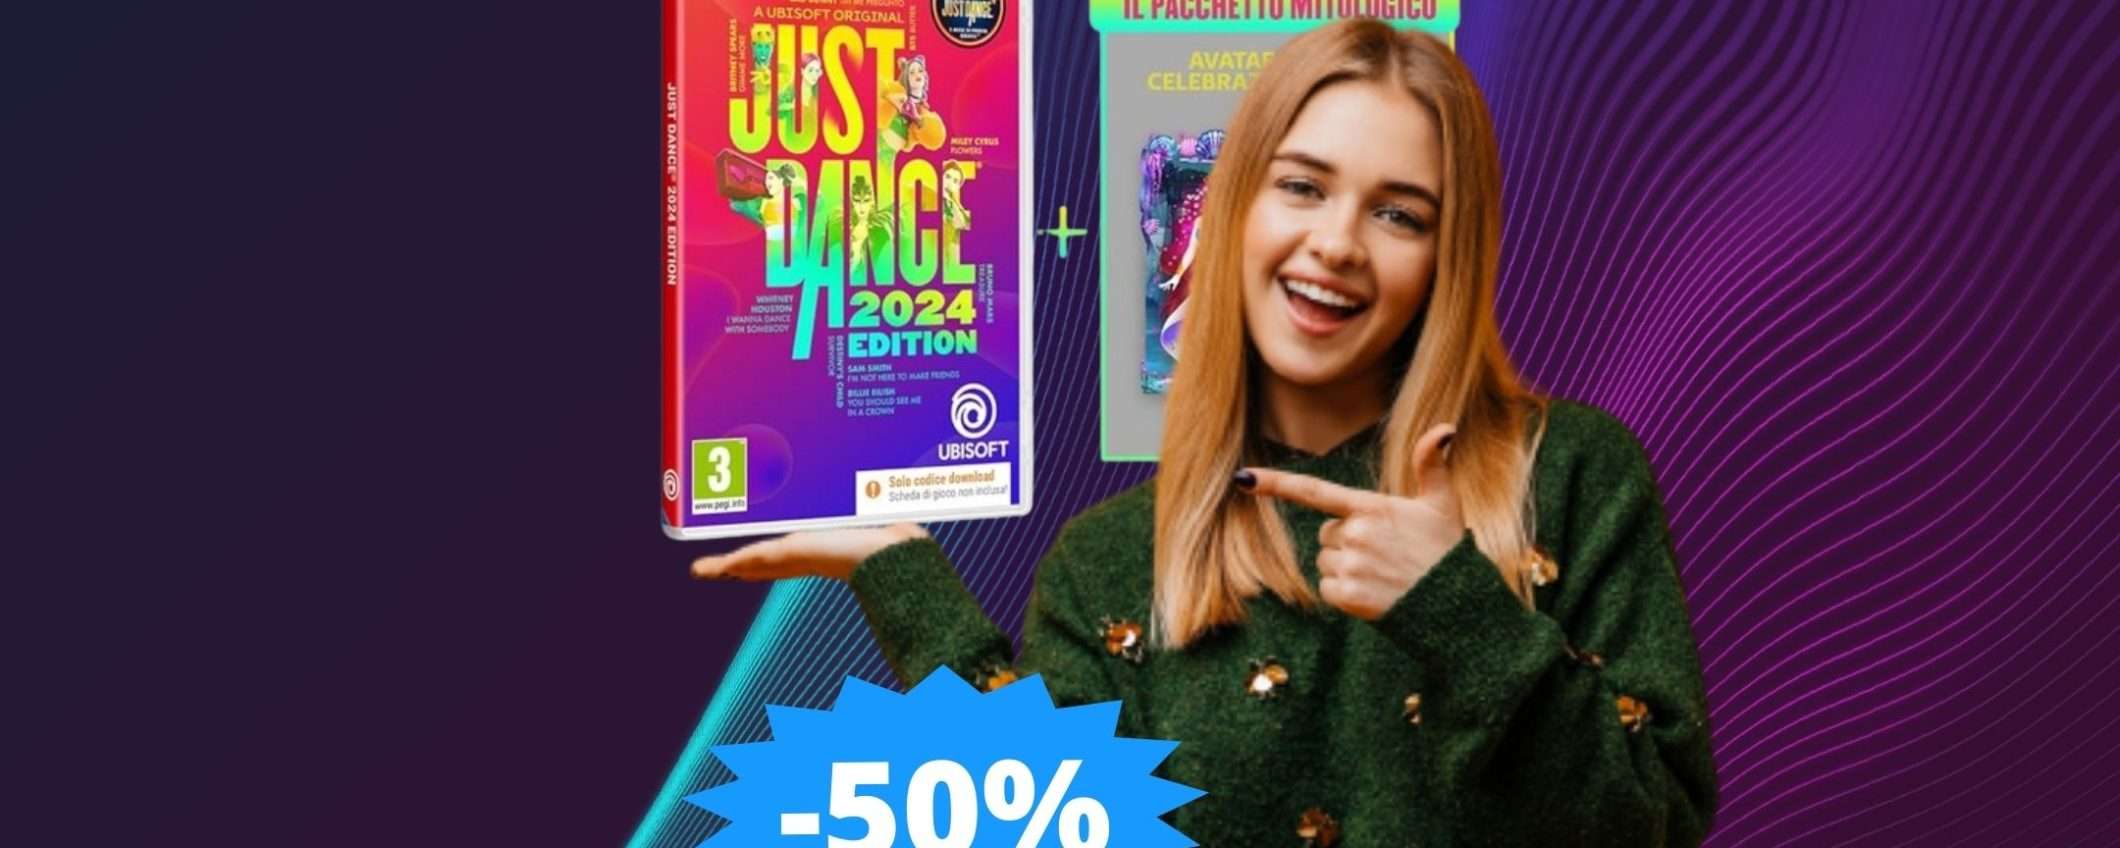 Just Dance 2024 per Switch: prezzo BOMBA su Amazon (-50%)